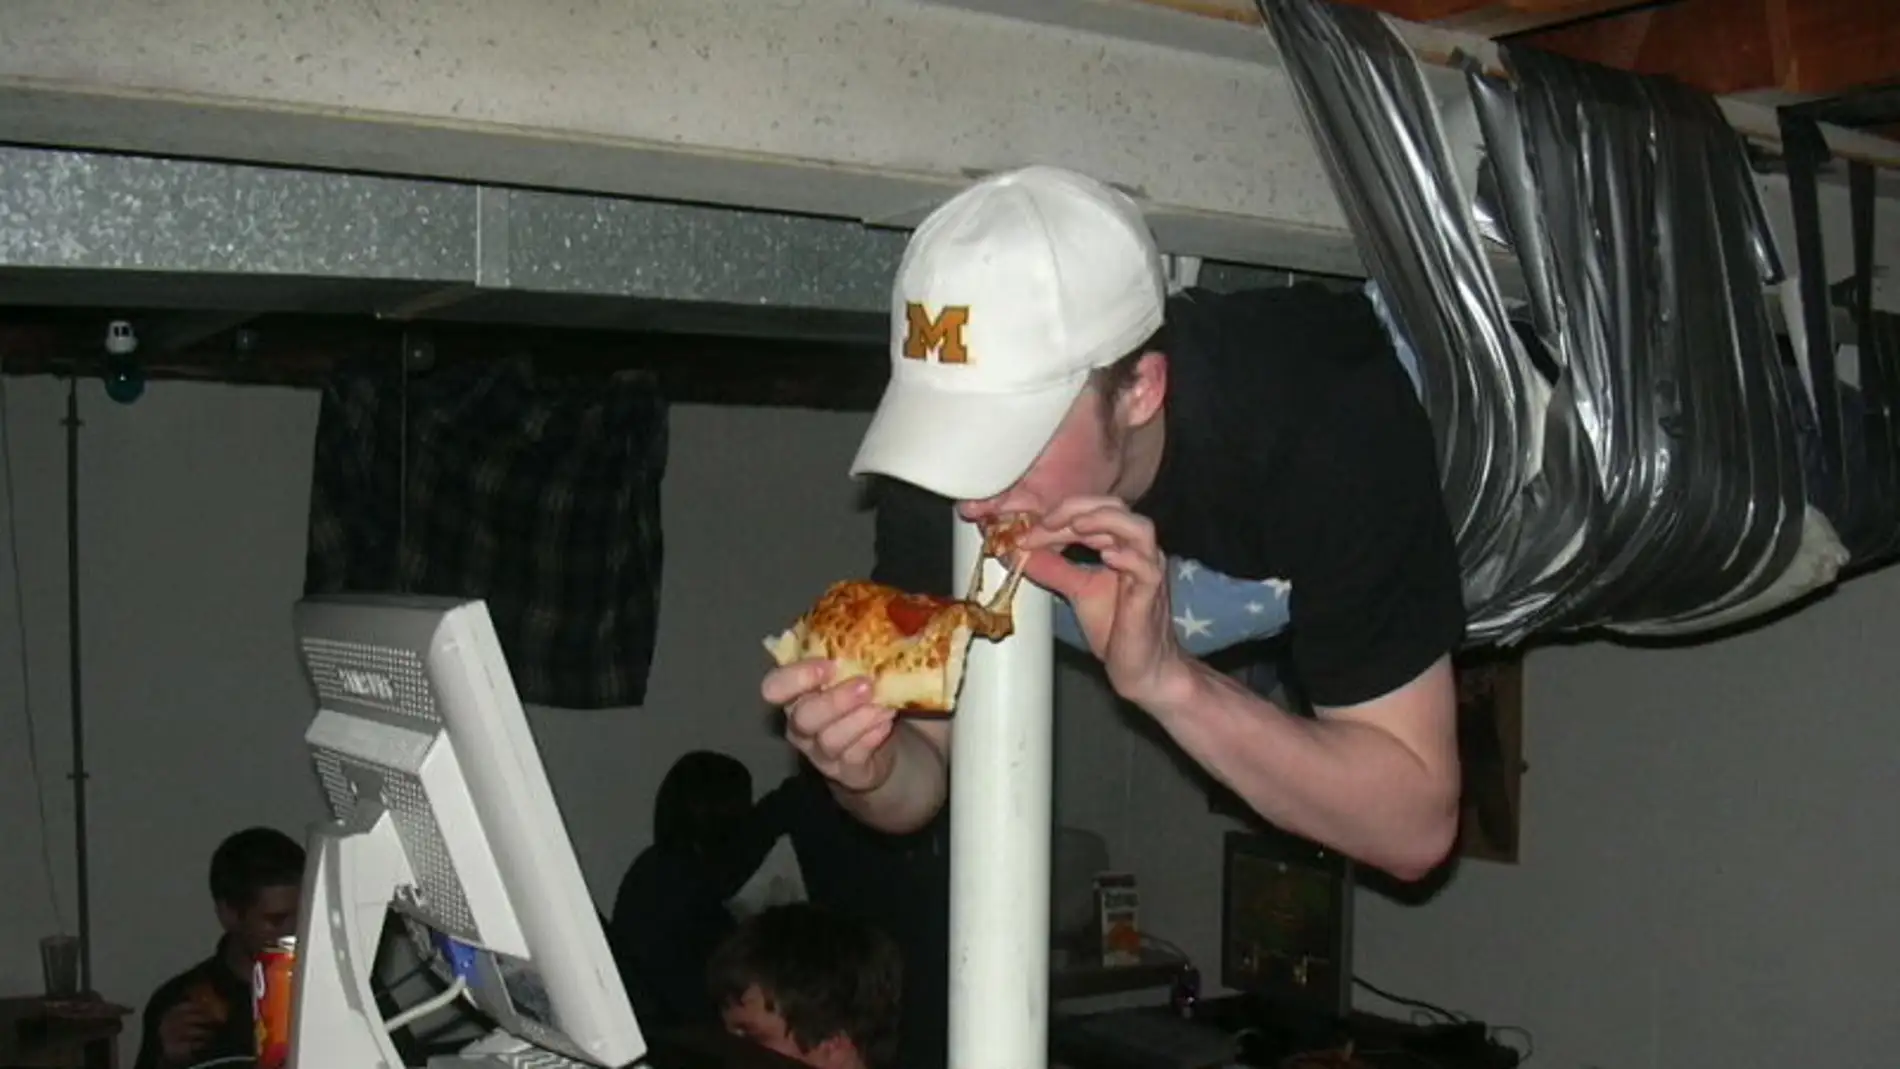 Persona comiendo pizza mientras juega al PC